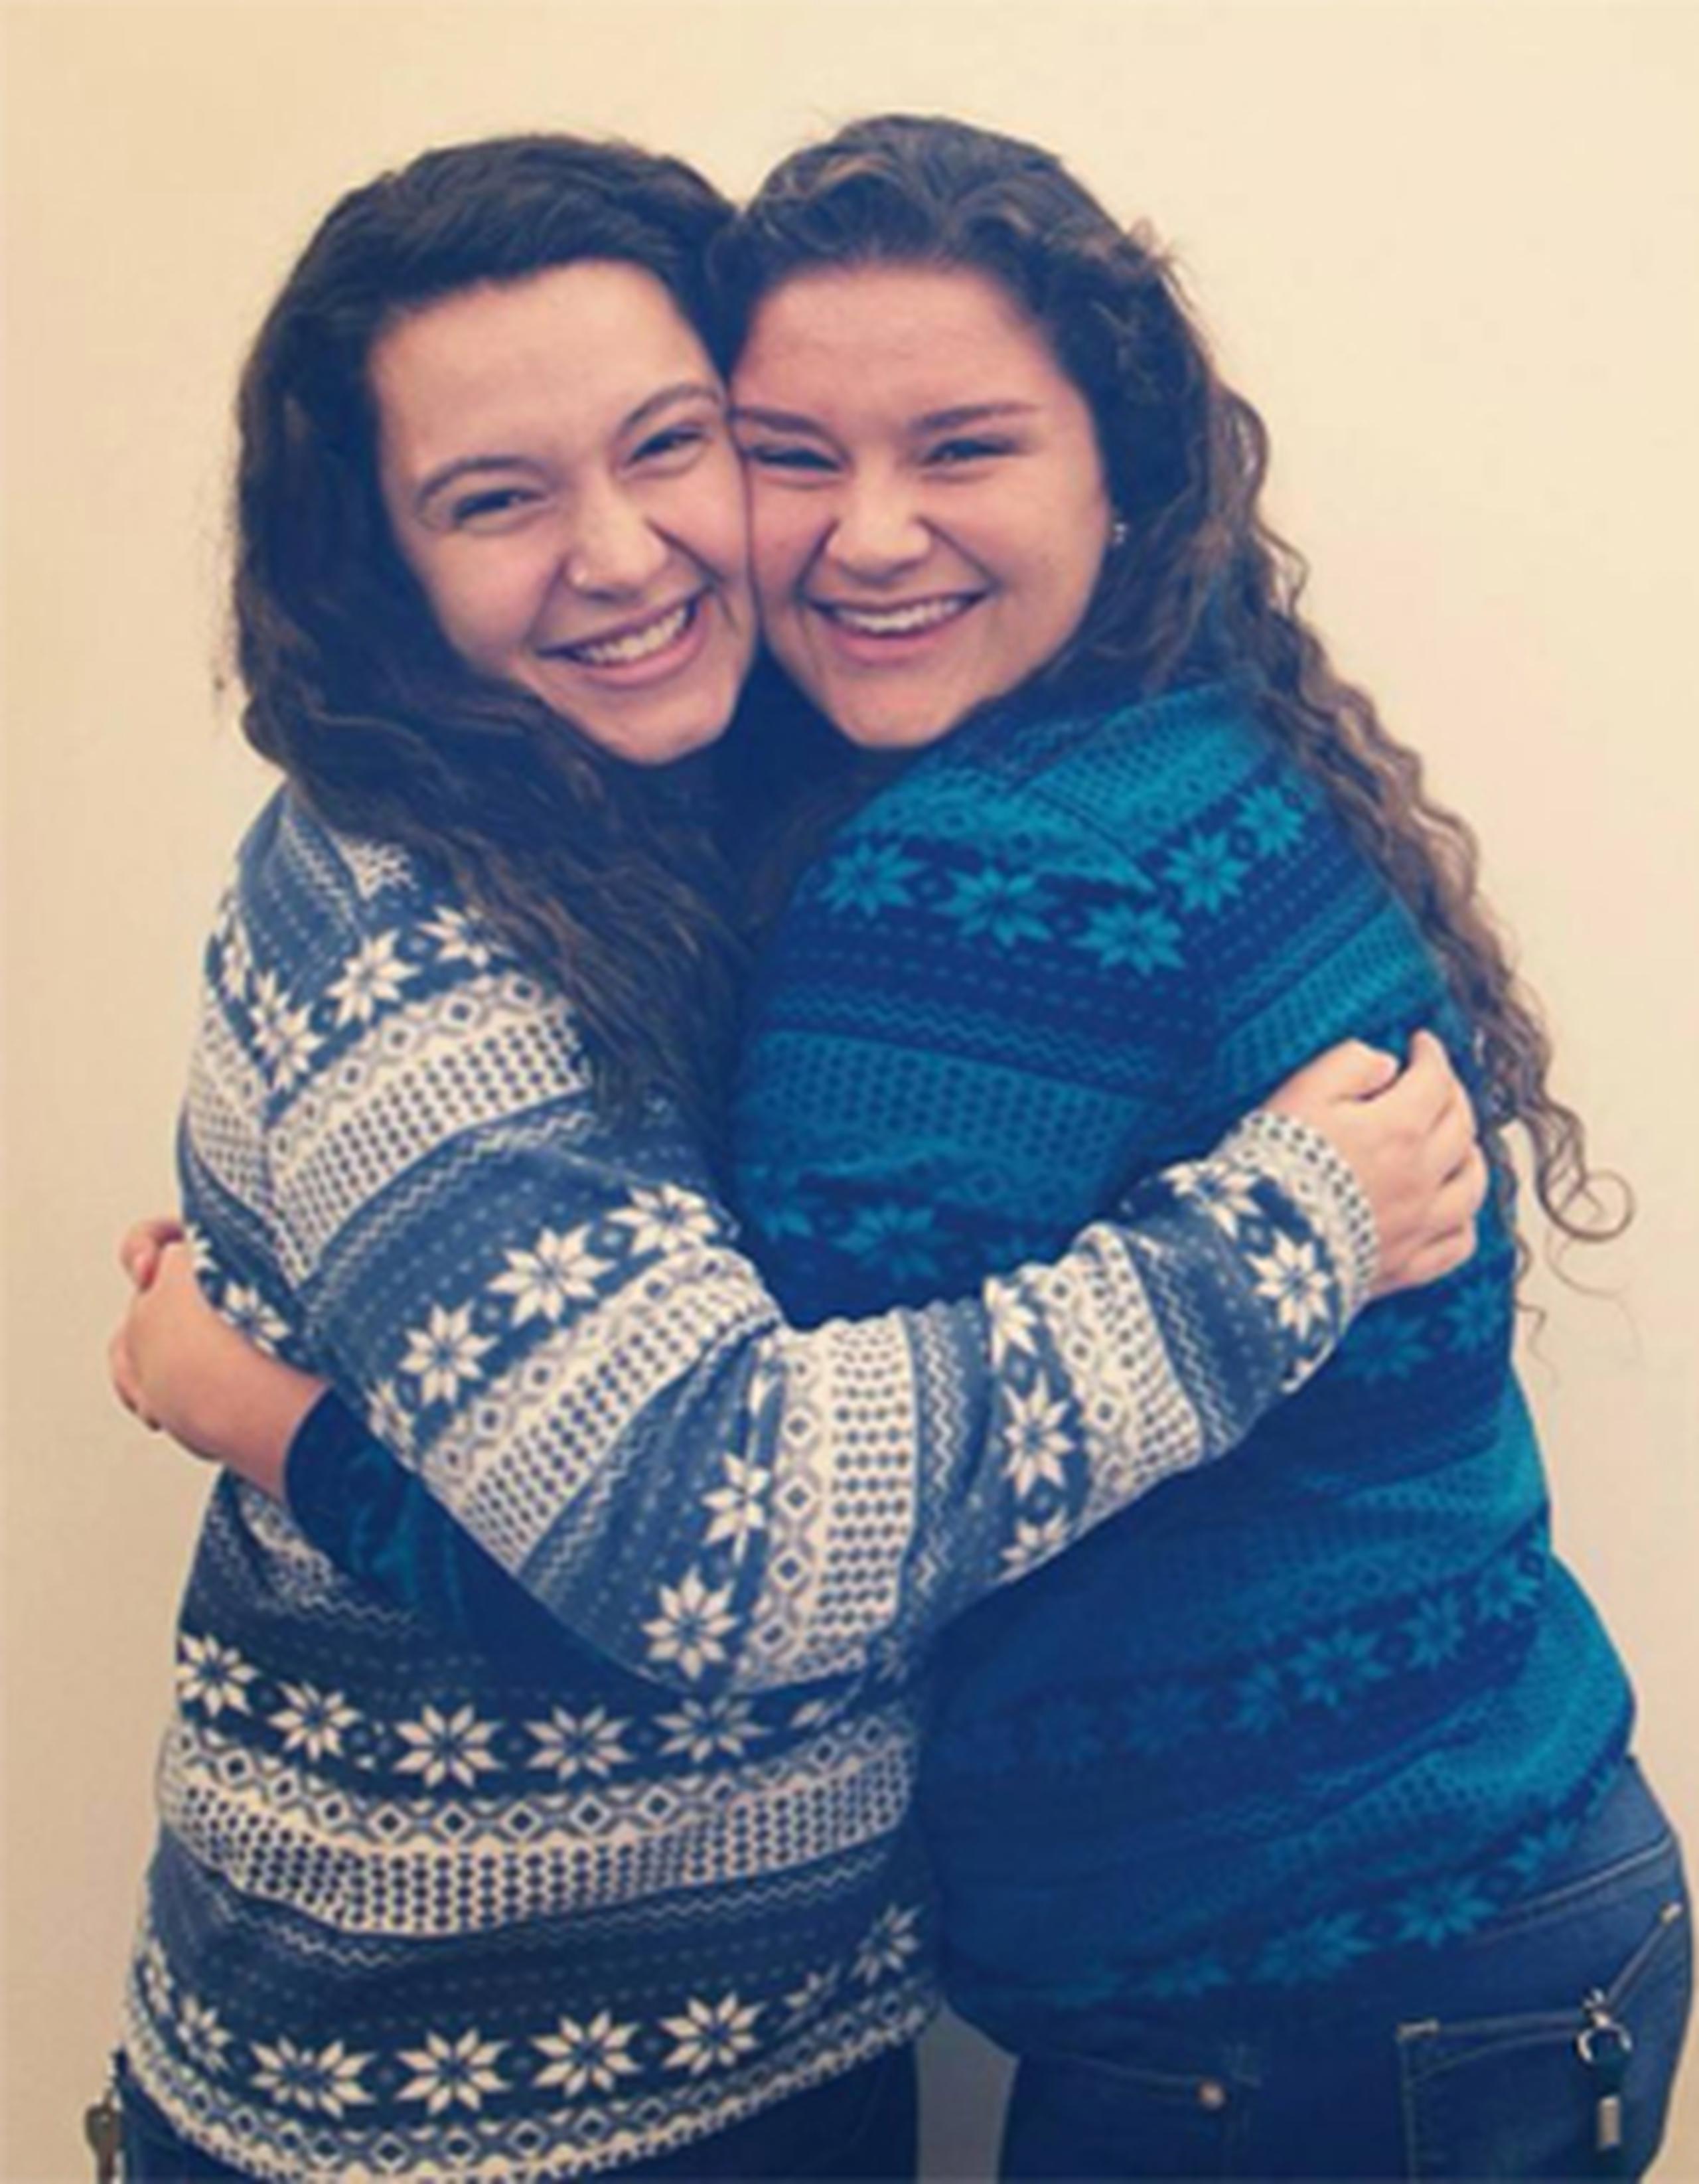 Mikayla Stern-Ellis, de 19 años, y Emily Nappi, de 18, se conocieron en Facebook antes de comenzar sus estudios en la misma universidad, la Tulane University, en Luisiana, y poco a poco su relación se tornó en una amistad inseparable. (Facebook)